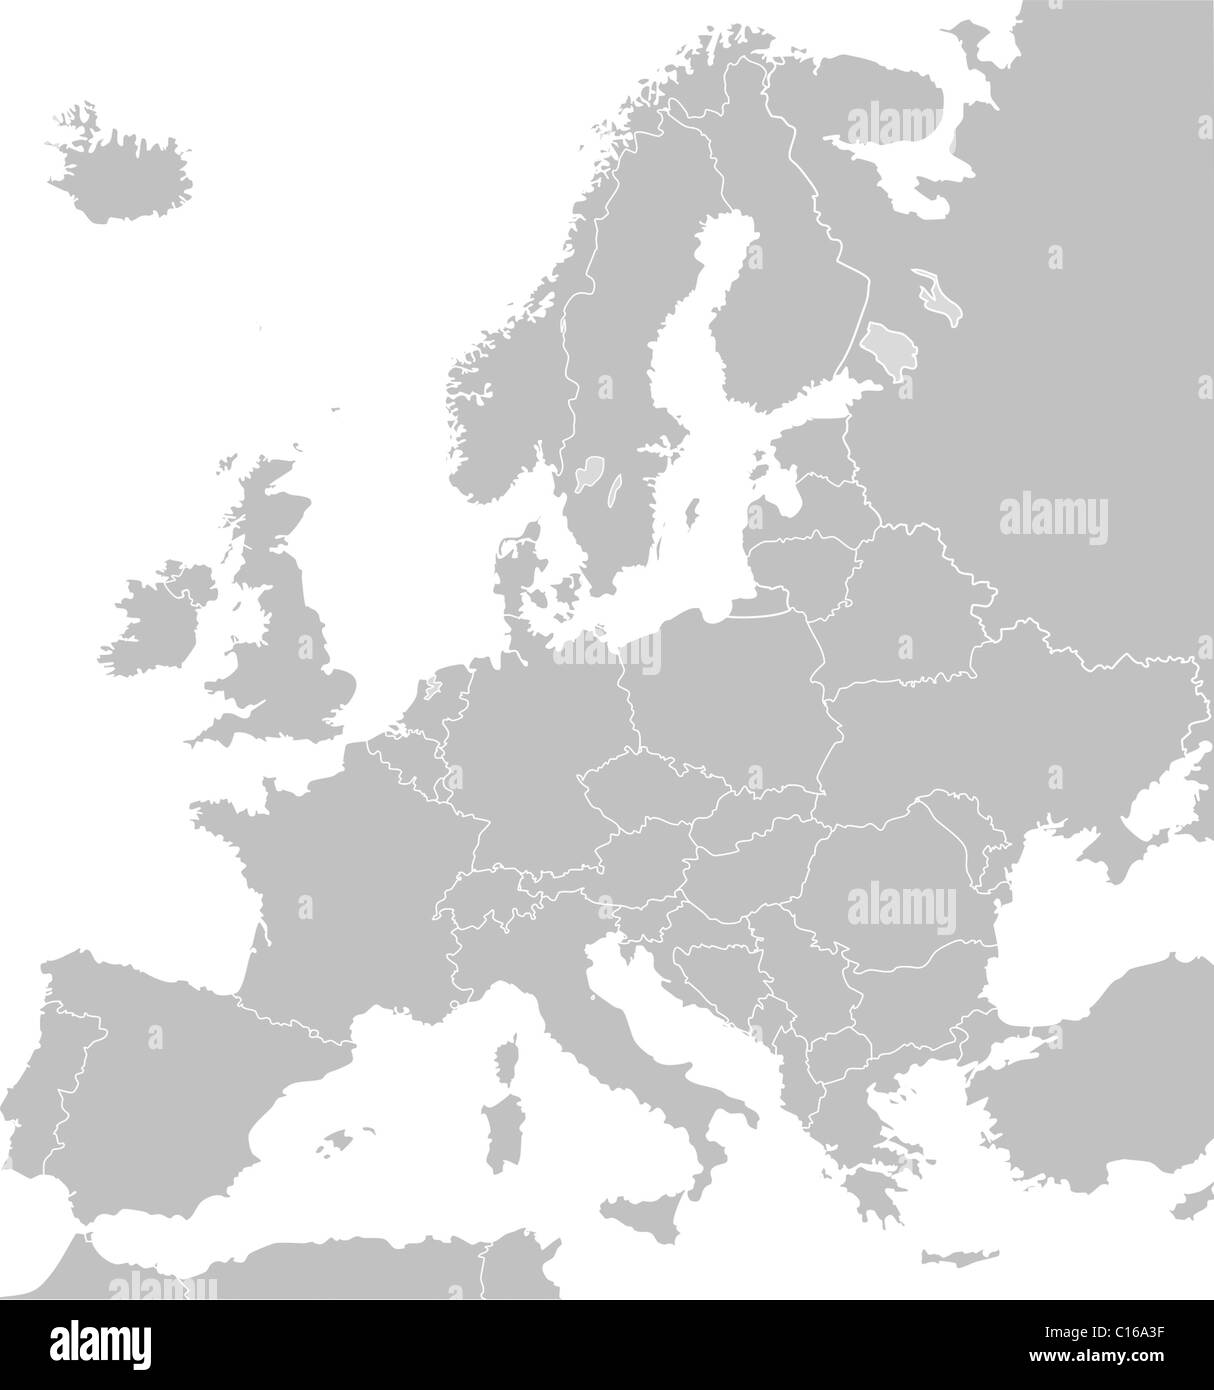 Mappa illustrata di Europa in grigio o grigio con le frontiere dei paesi; sullo sfondo bianco. Foto Stock